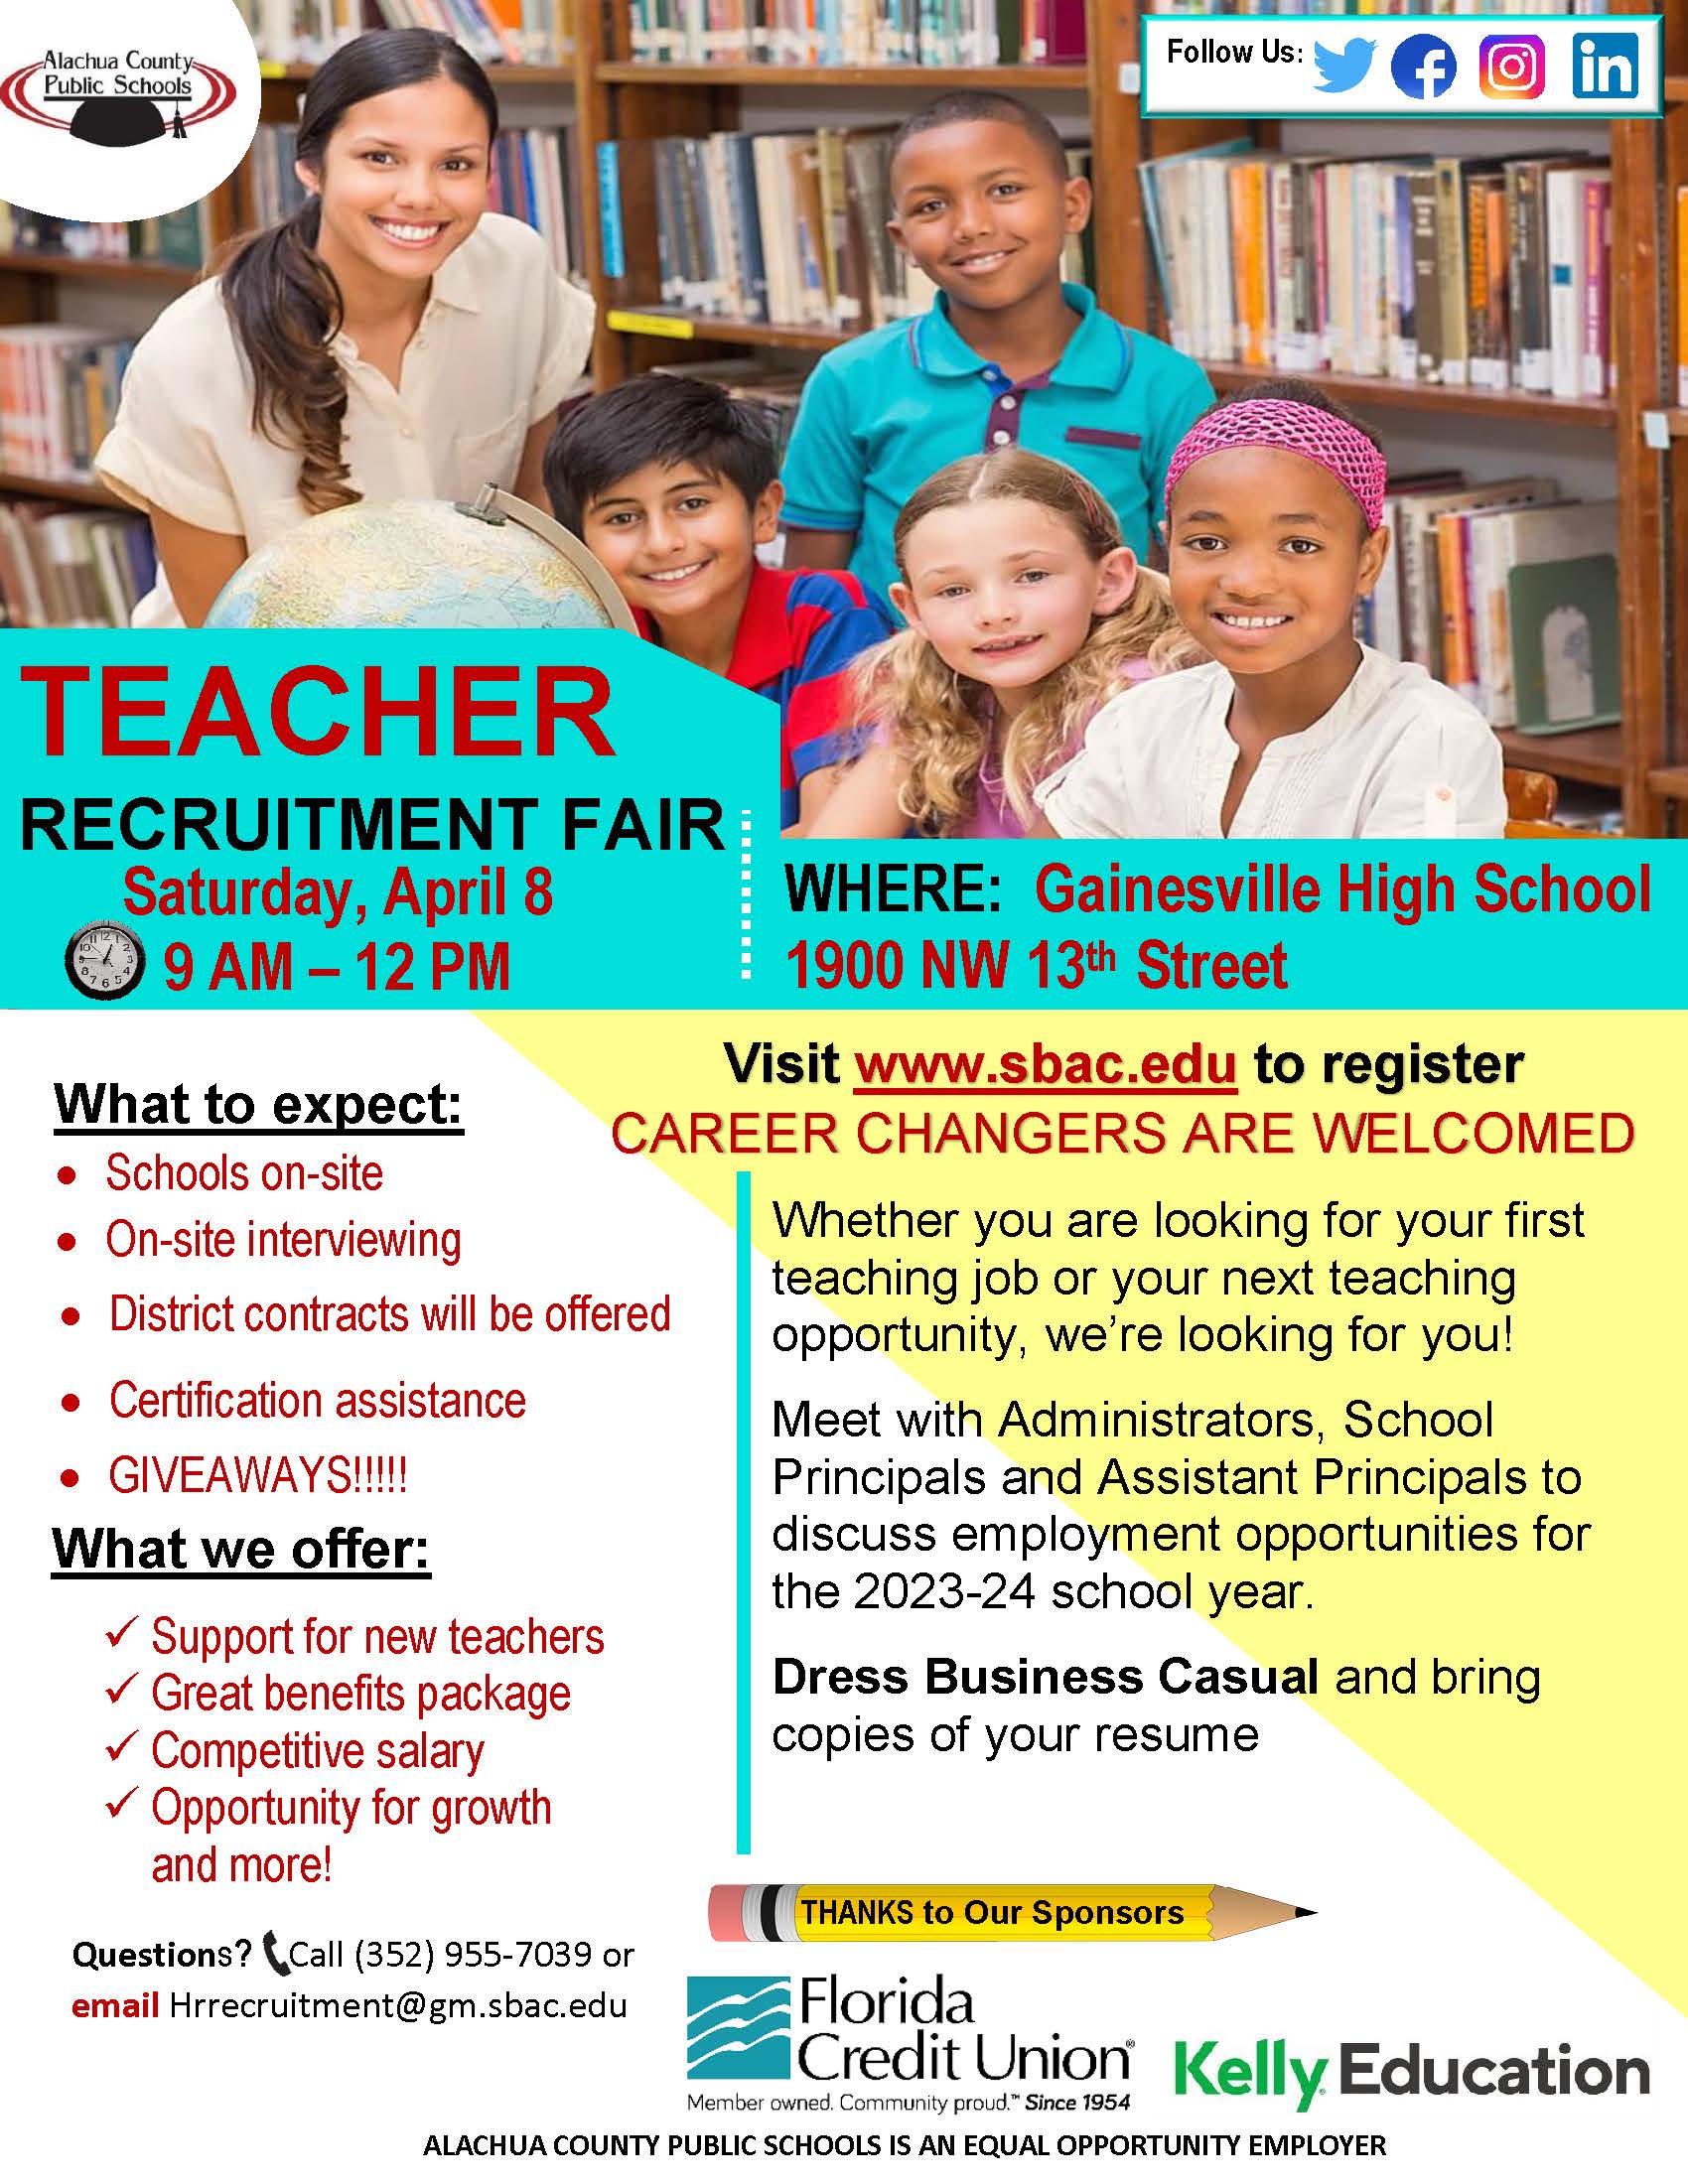 A flyer for Teacher Recruitment Fair.